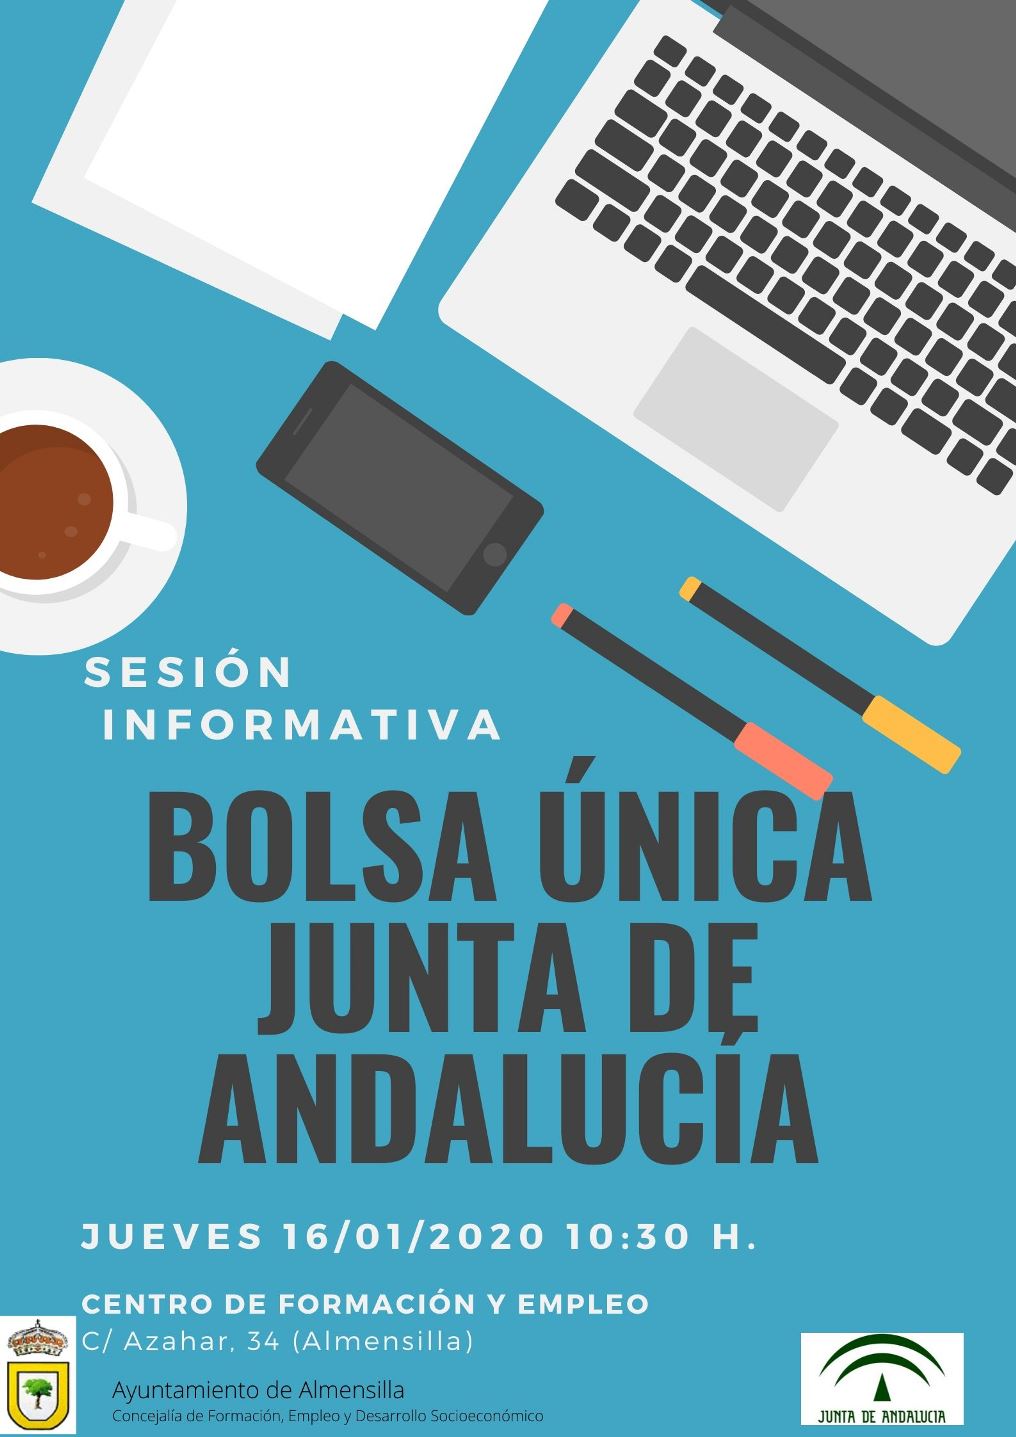 Bolsa_xnica_Junta_de_Andalucxa.jpg